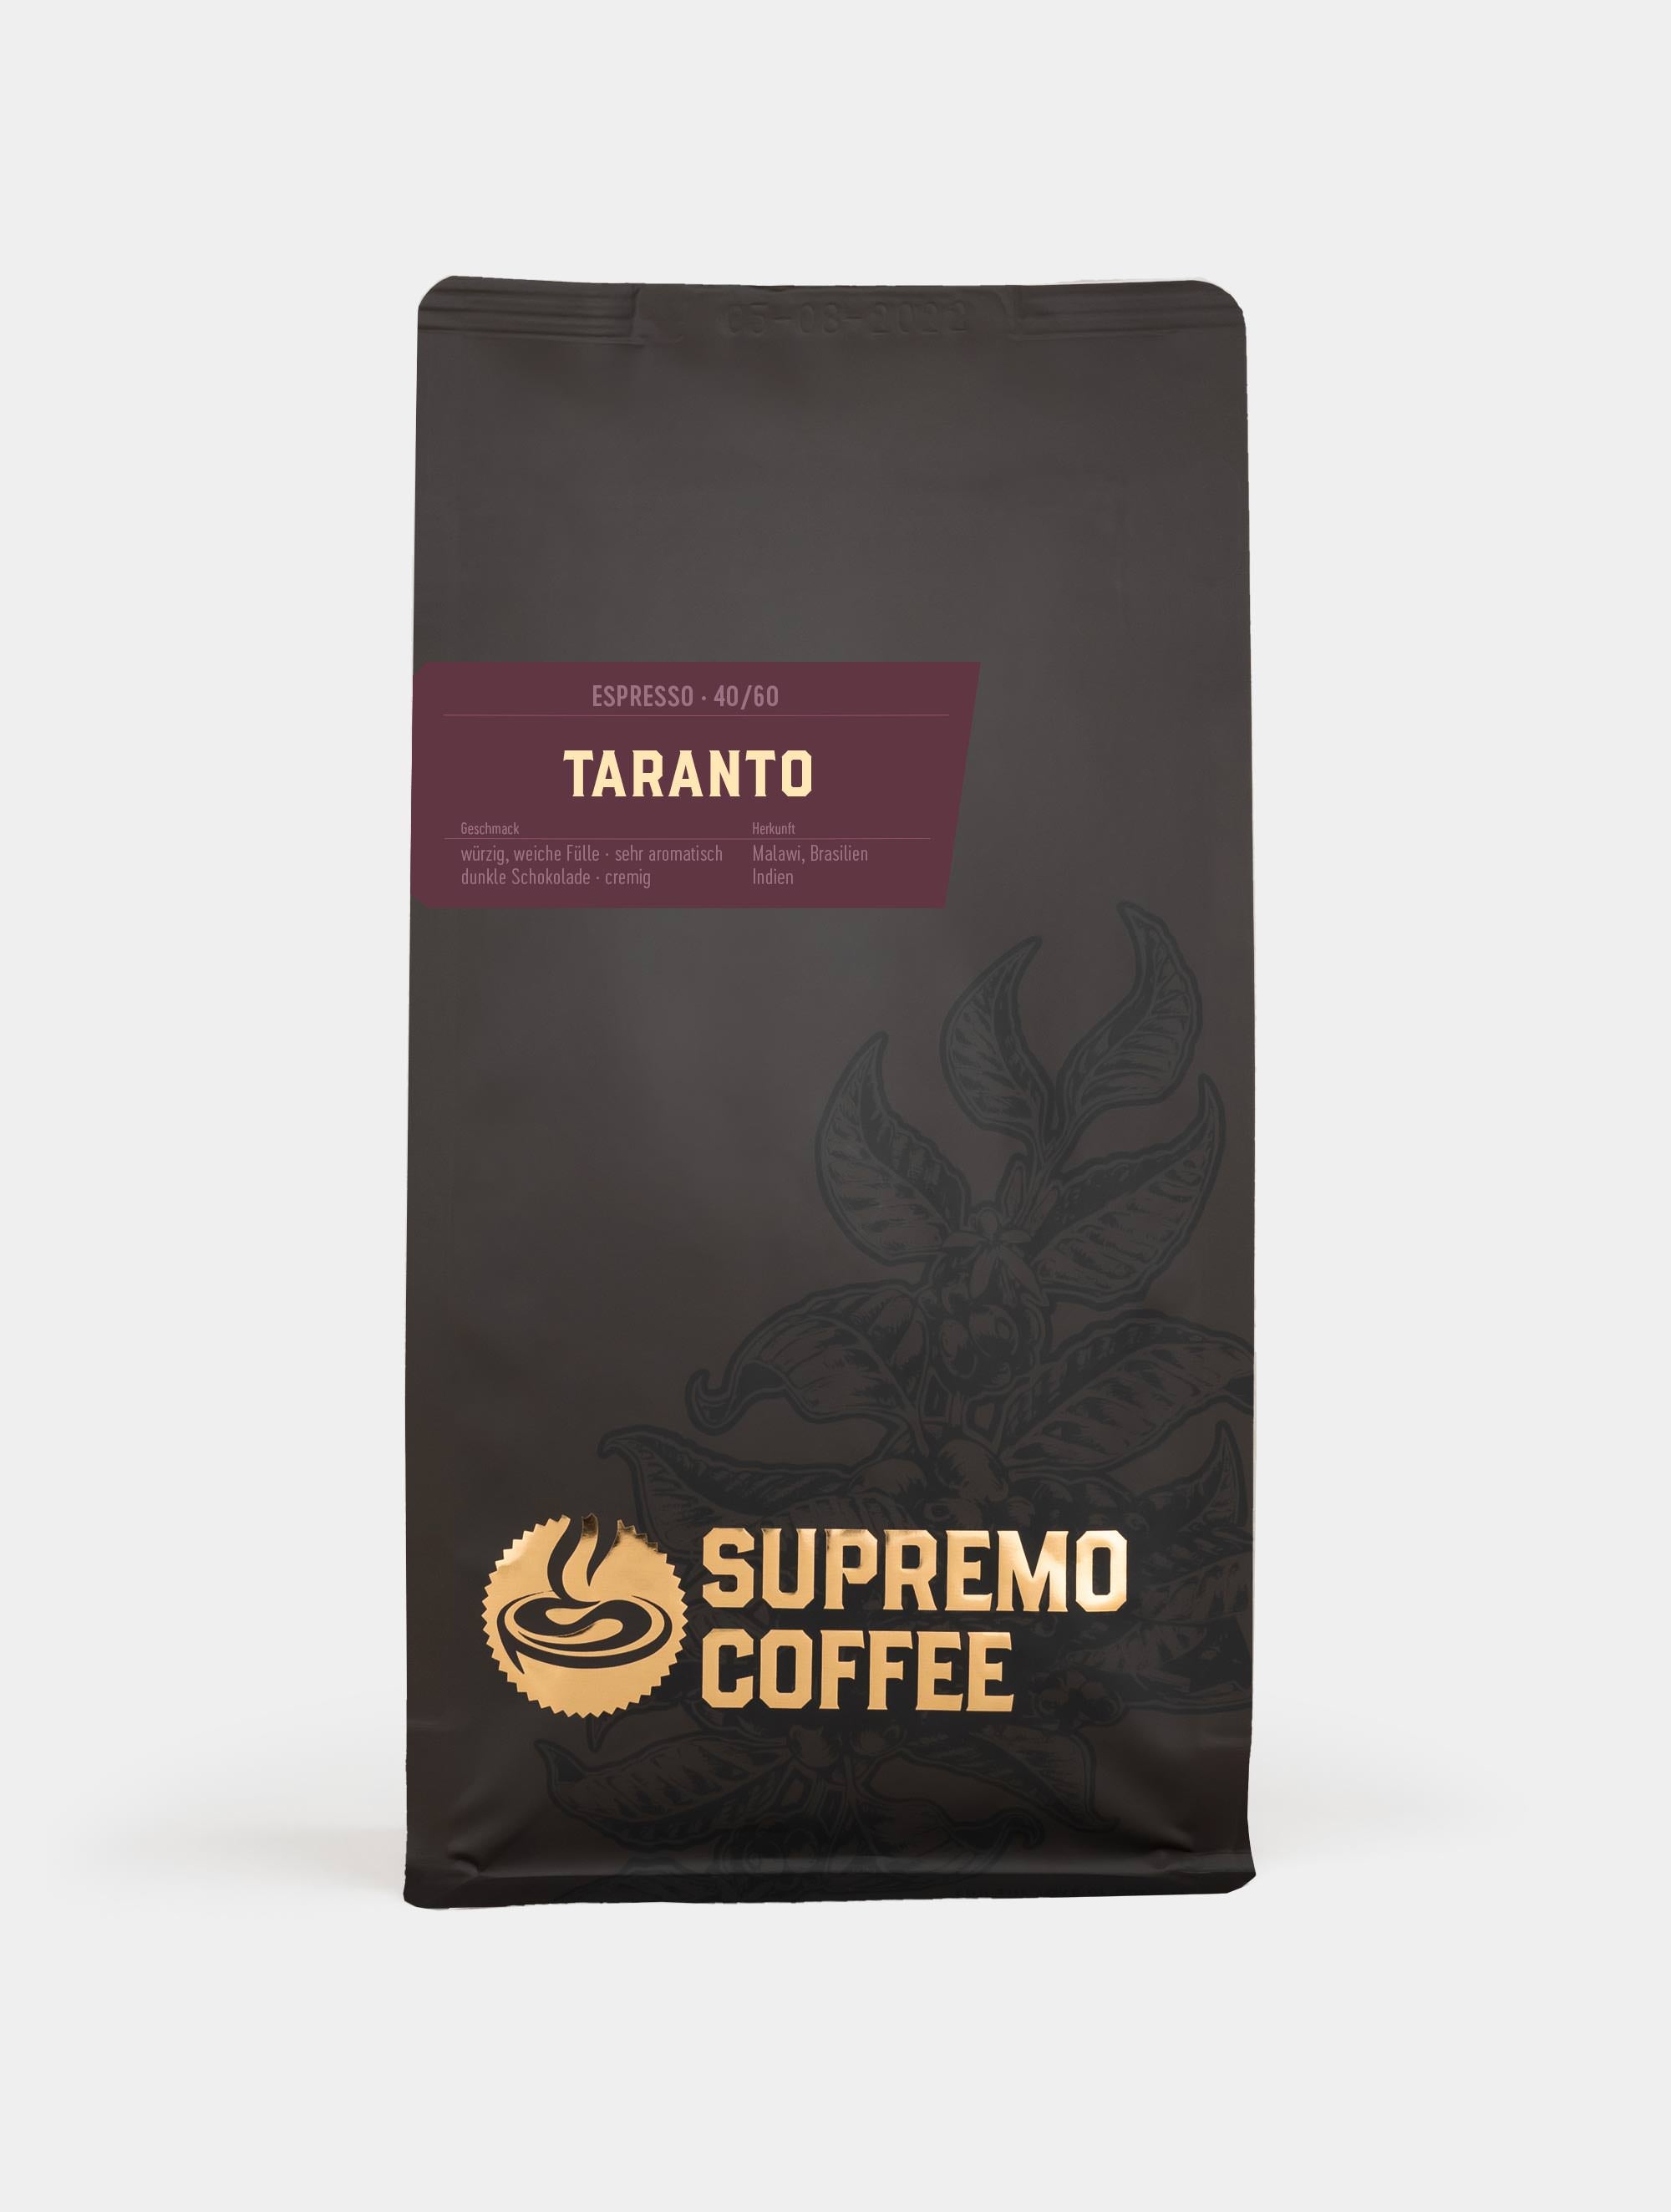 Taranto, Espresso 40/60 | SUPREMO Coffee